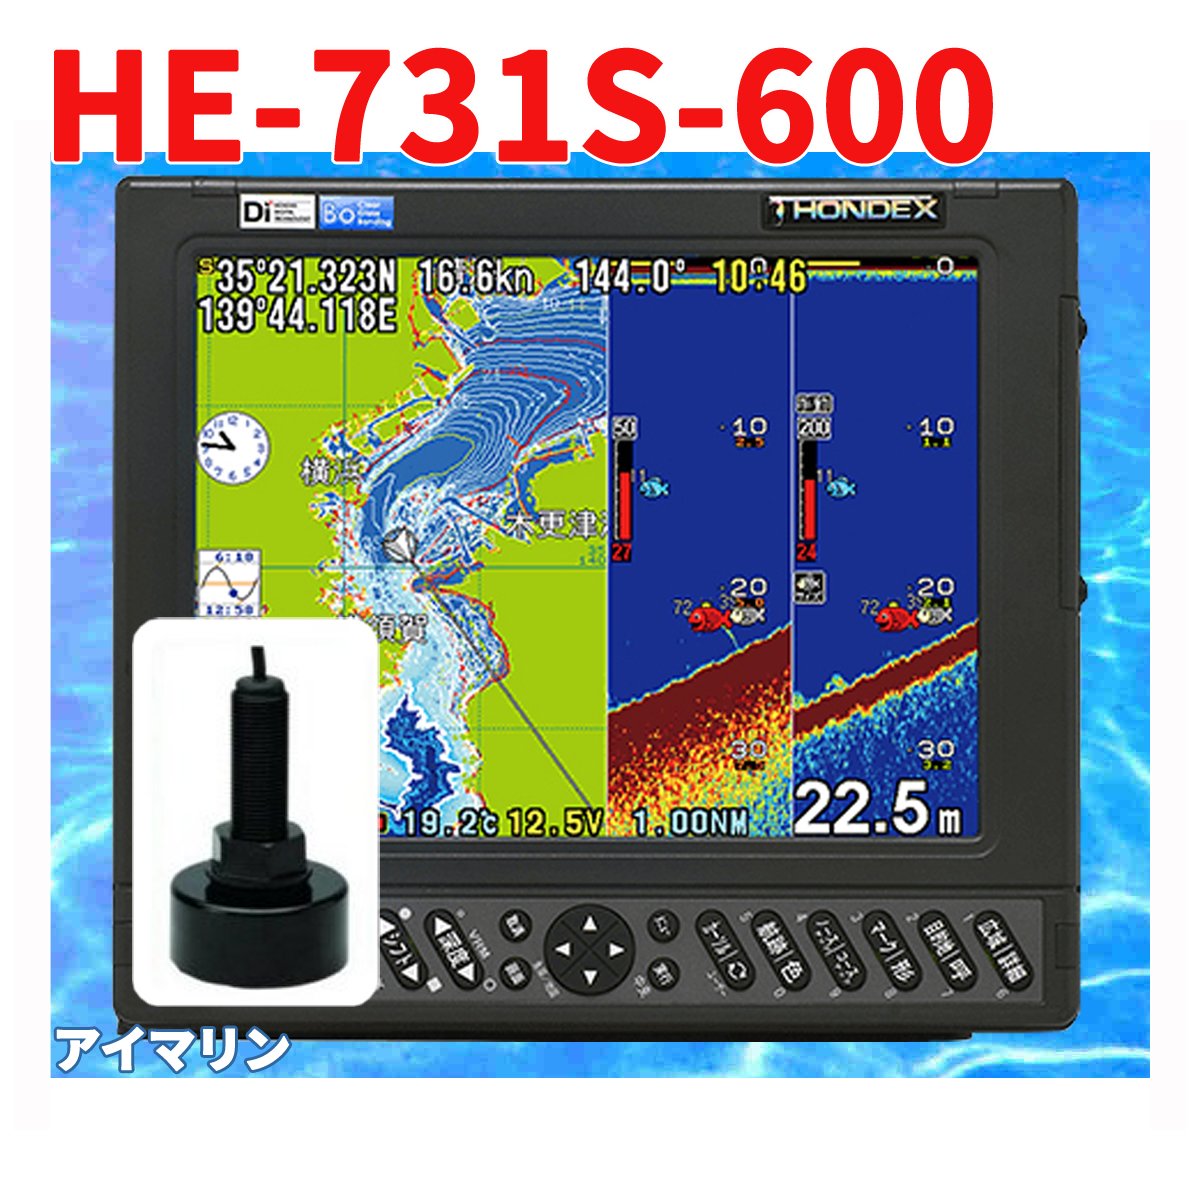 5/20 在庫あり 魚群探知機 HONDEX HE-731S 600w TD28 振動子付き GPS 魚探 アンテナ内蔵 ホンデックス